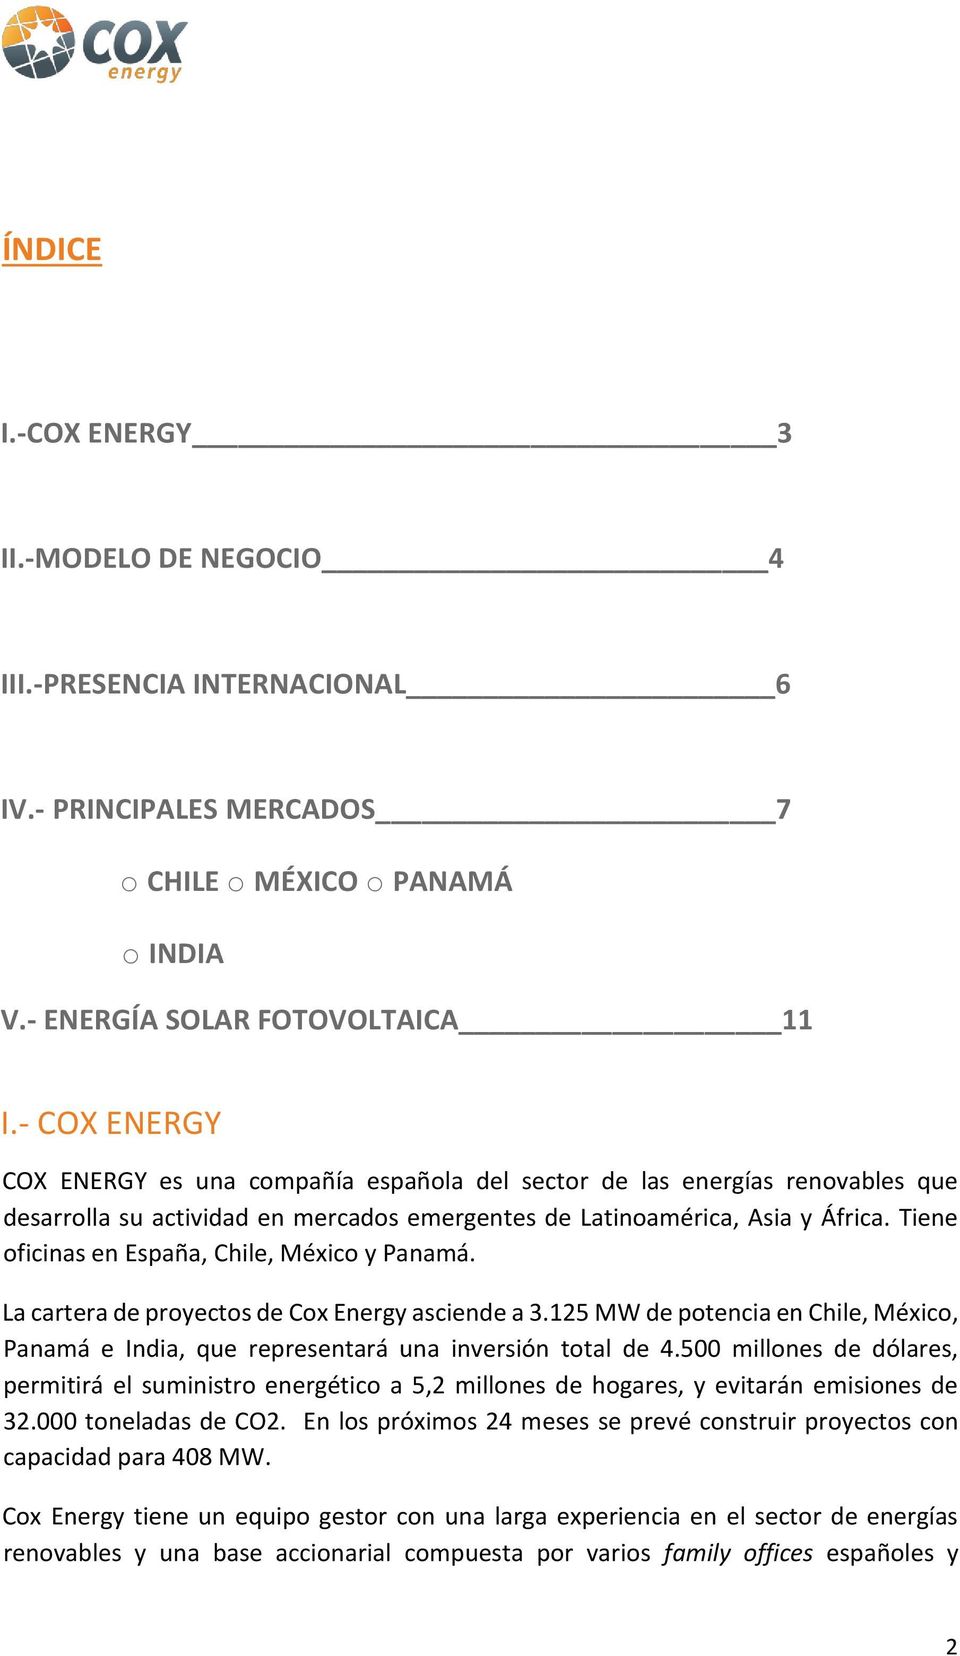 Tiene oficinas en España, Chile, México y Panamá. La cartera de proyectos de Cox Energy asciende a 3.125 MW de potencia en Chile, México, Panamá e India, que representará una inversión total de 4.